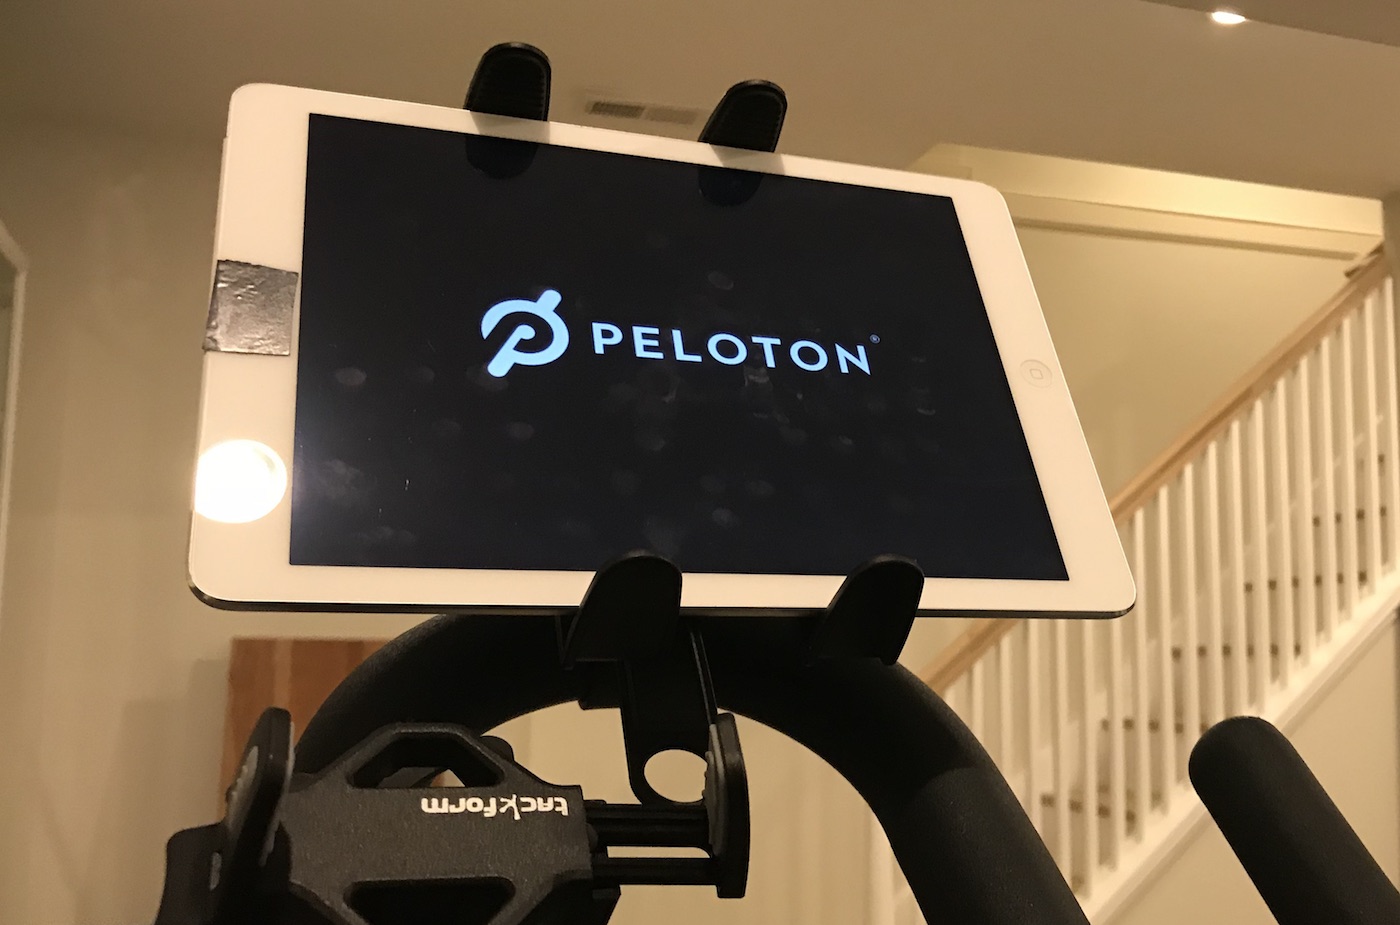 Peloton Digital effective cost update